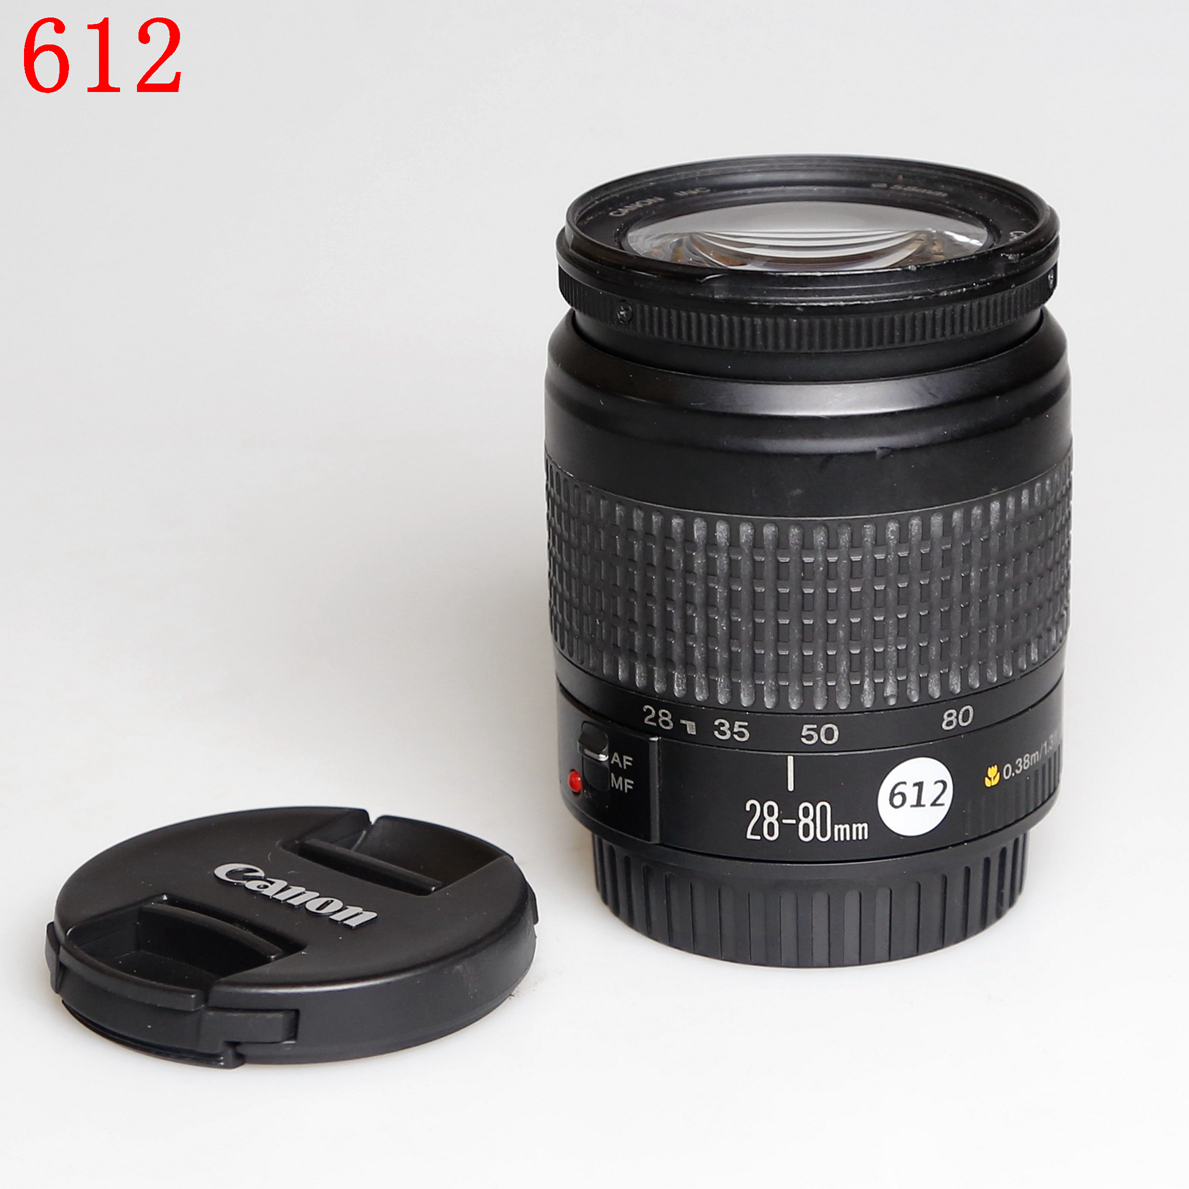 佳能 EF 28-80mm f/3.5-5.6 入门全画幅单反镜头编号612